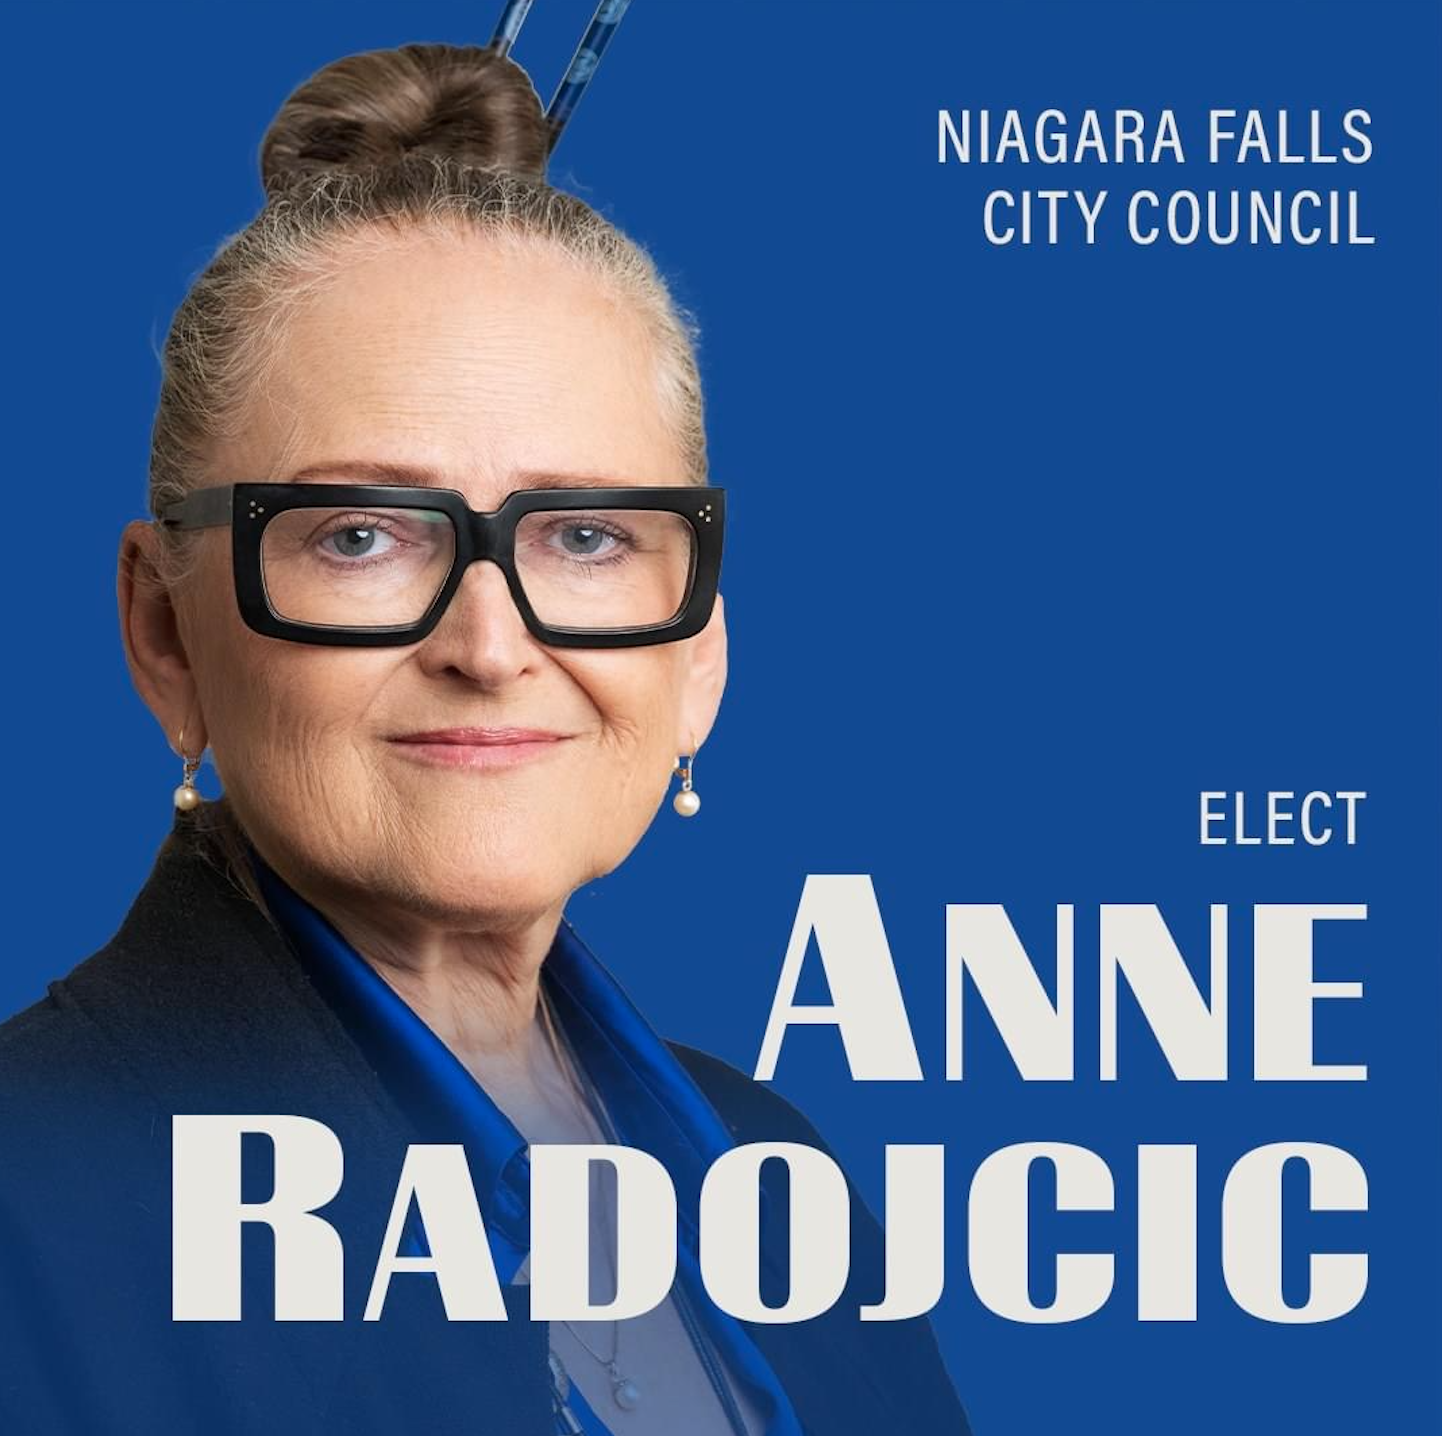 Anne Radojcic for Niagara Falls City Council Blank Meme Template